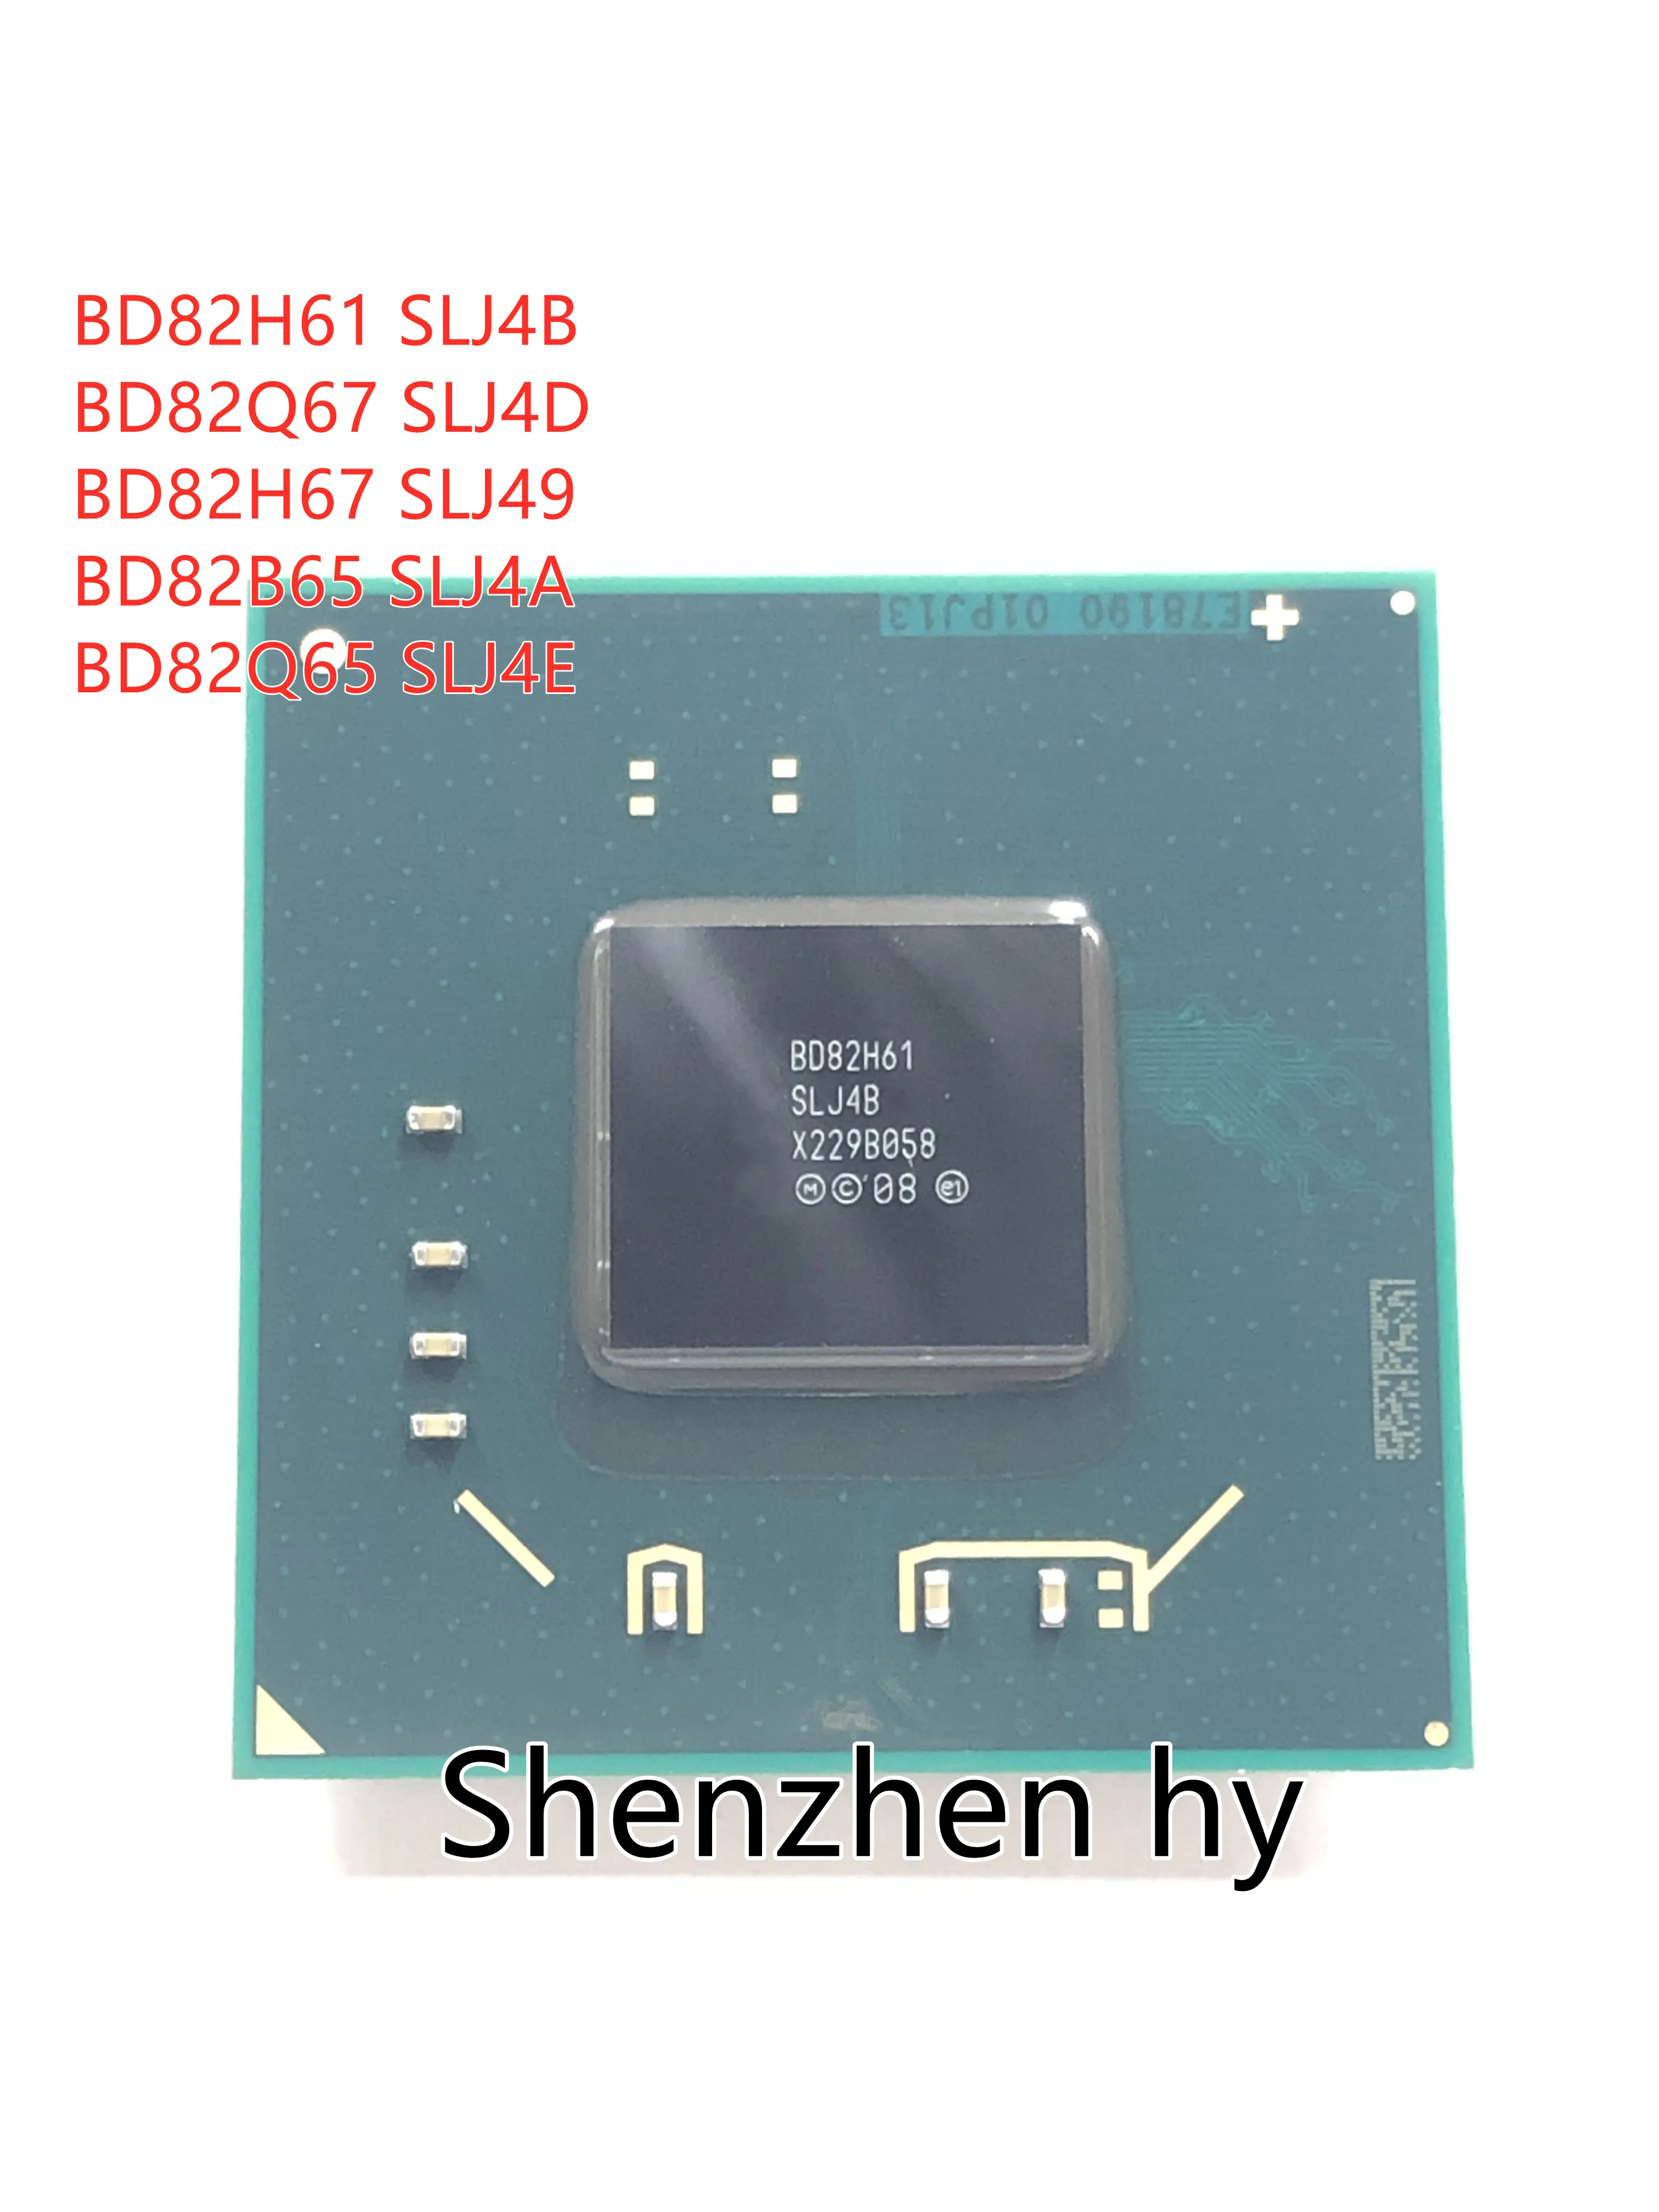 

BD82H61 SLJ4B BD82Q65 SLJ4E BD82B65 SLJ4A BD82H67 SLJ49 BD82Q67 SLJ4D BGA chipset new